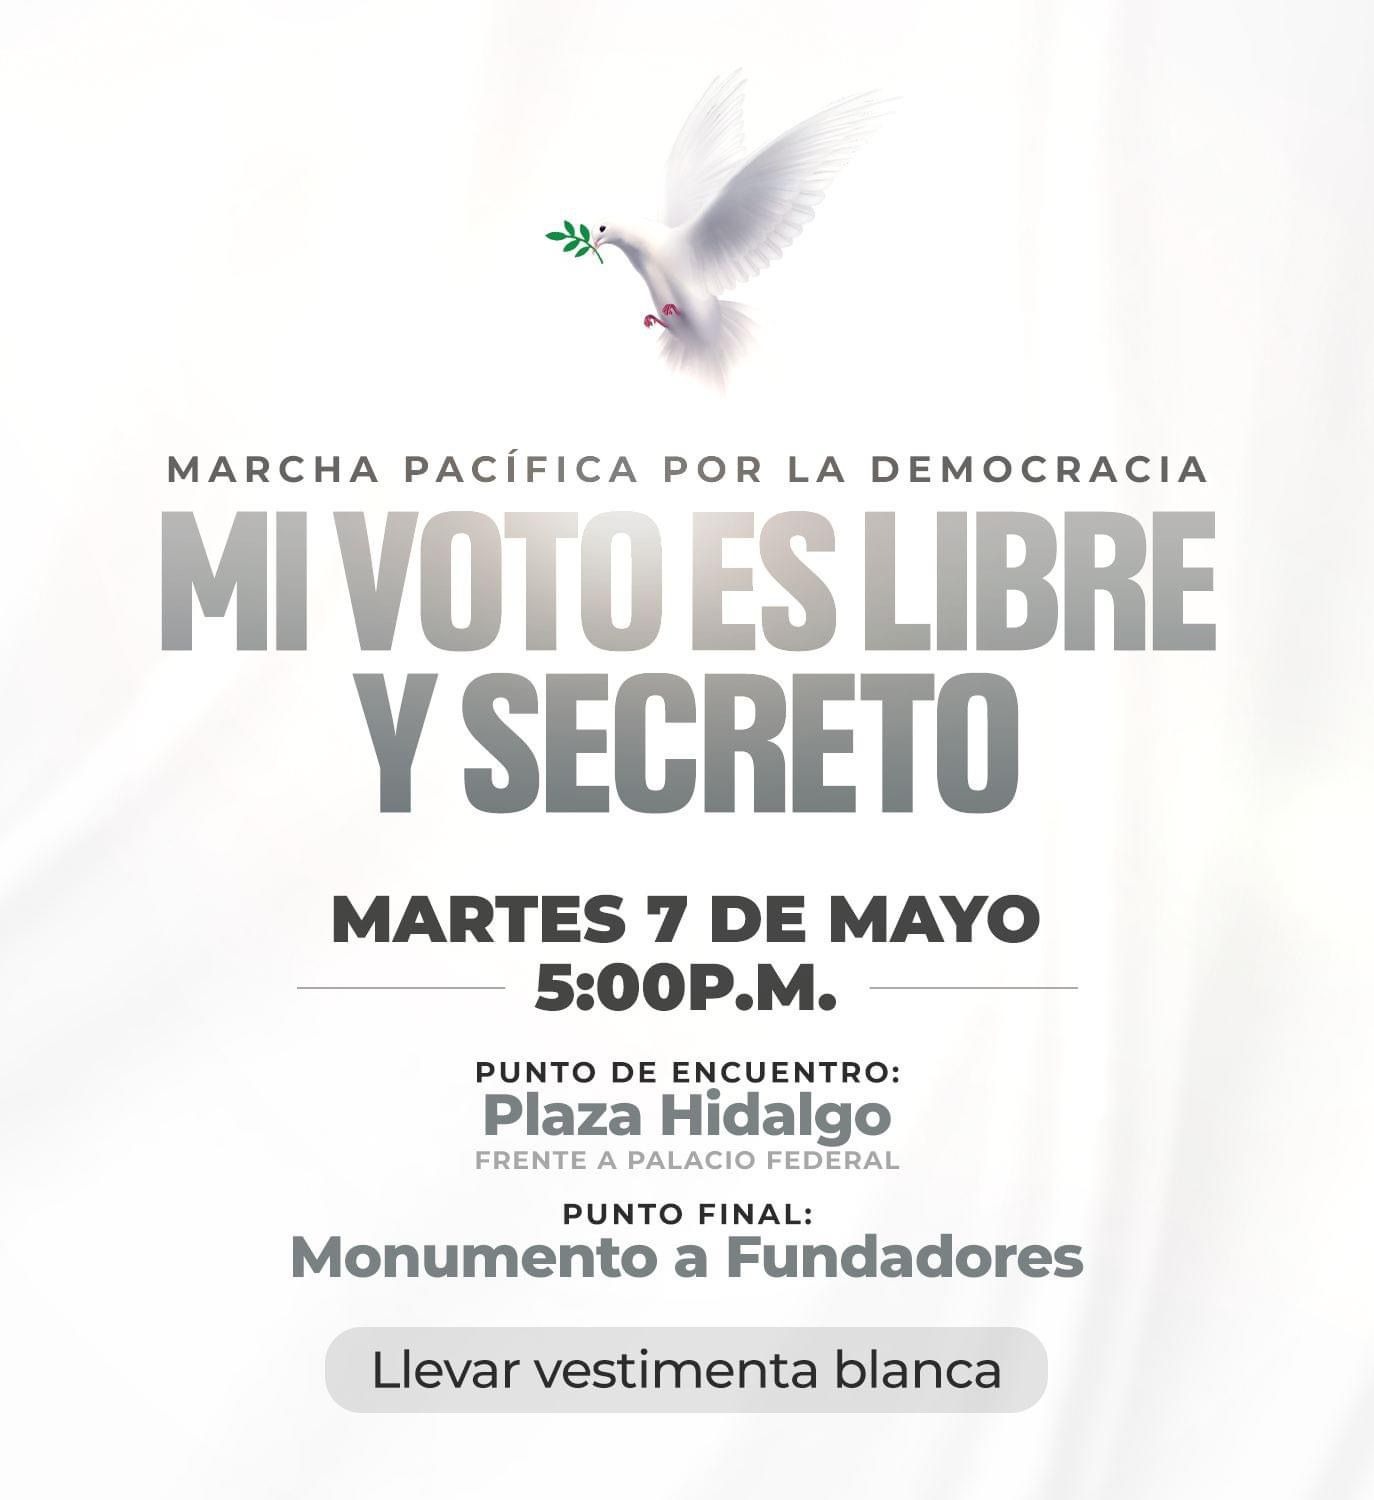 Invitación a Marcha por la Democracia en Nuevo Laredo. Foto: Carmen Lilia Cantúrosas Villarreal